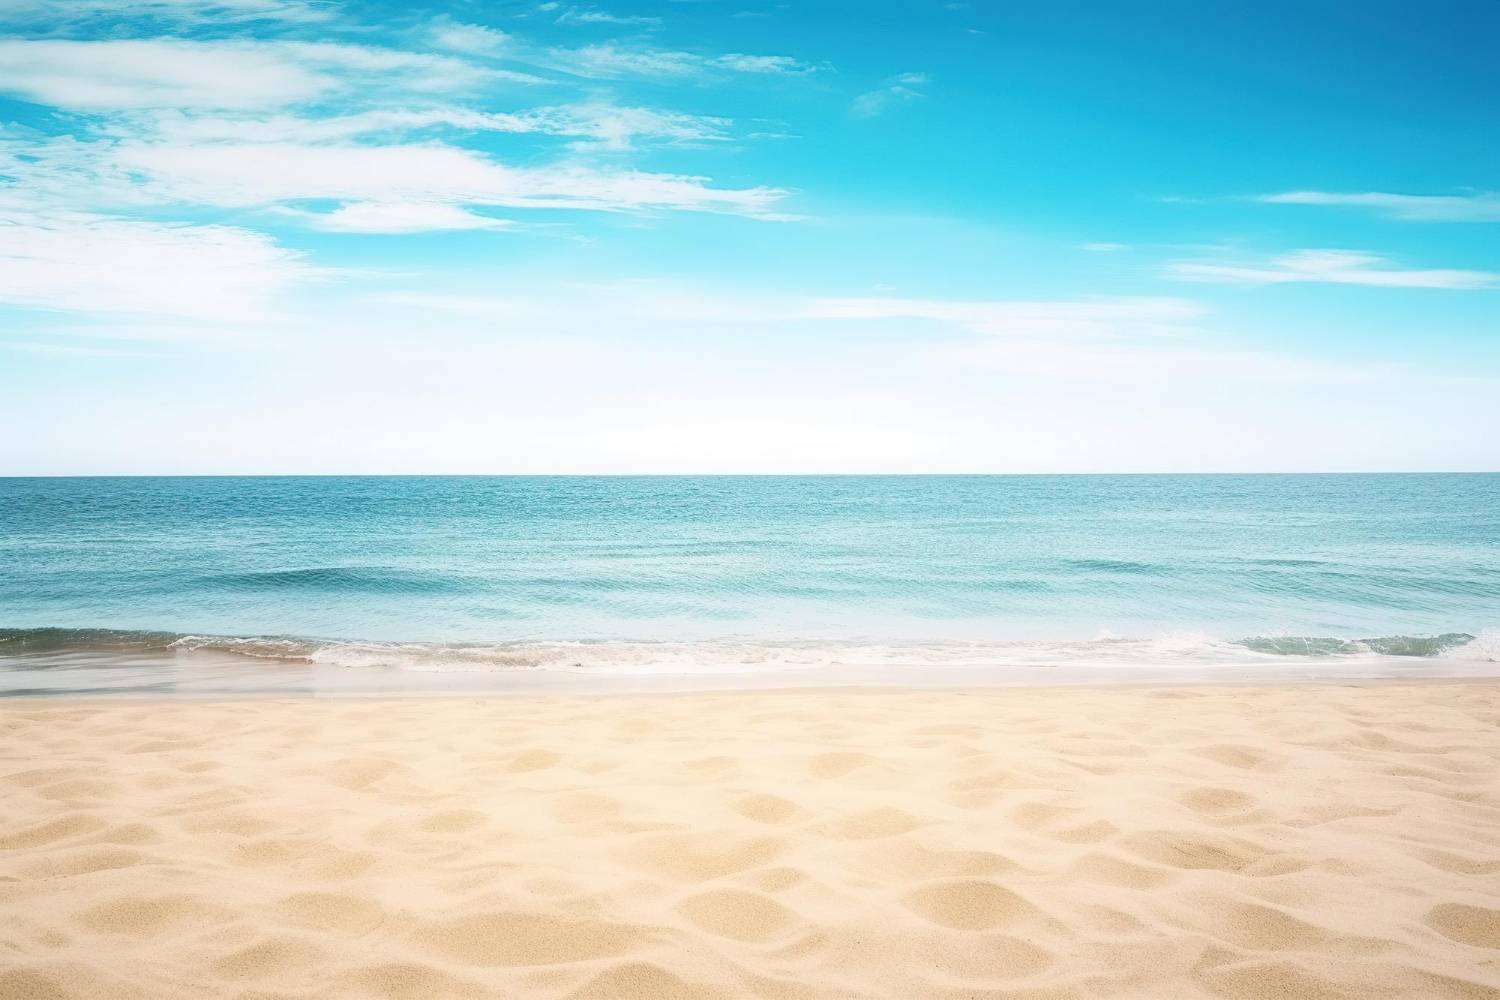 Serene beach scene with clear blue sky, calm ocean, and sandy shore.